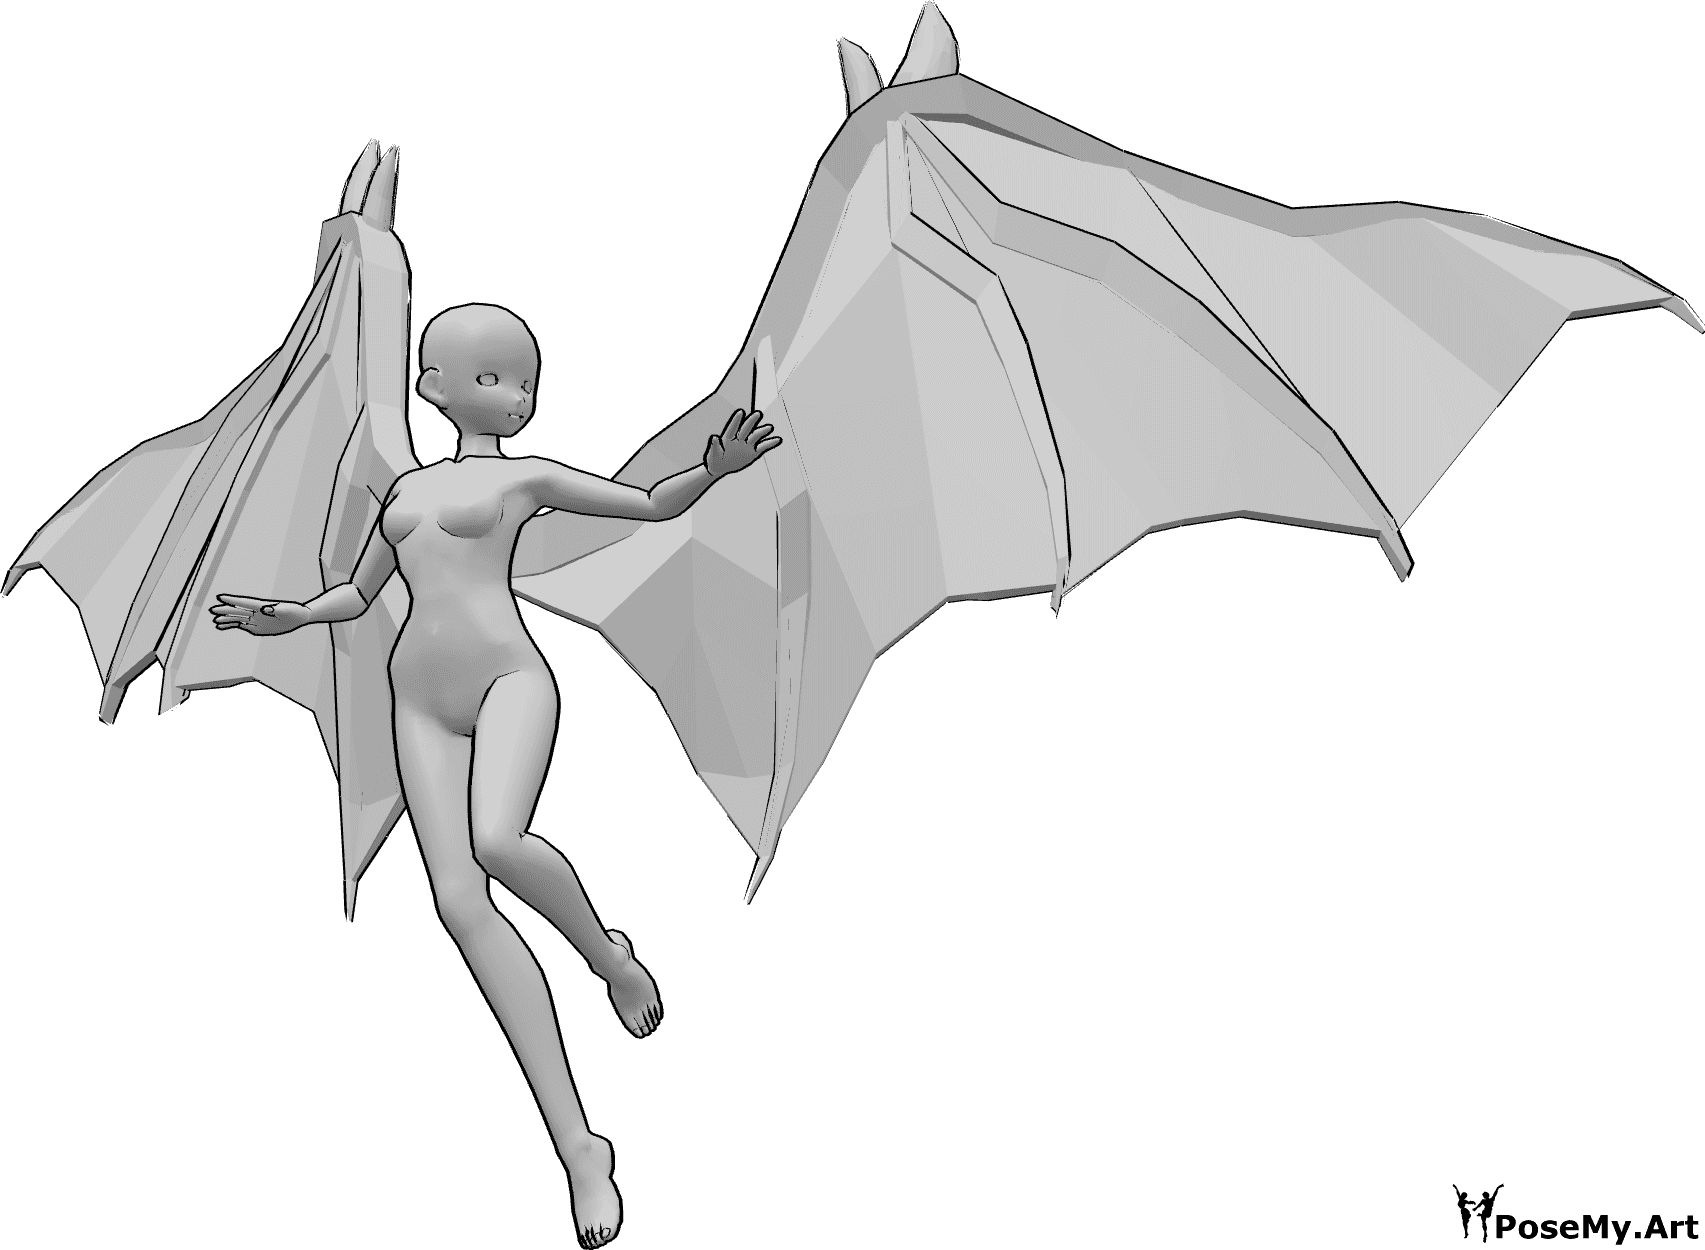 Posen-Referenz- Anime aussehende fliegende Pose - Anime-Frau mit Teufelsflügeln fliegt und schaut nach links